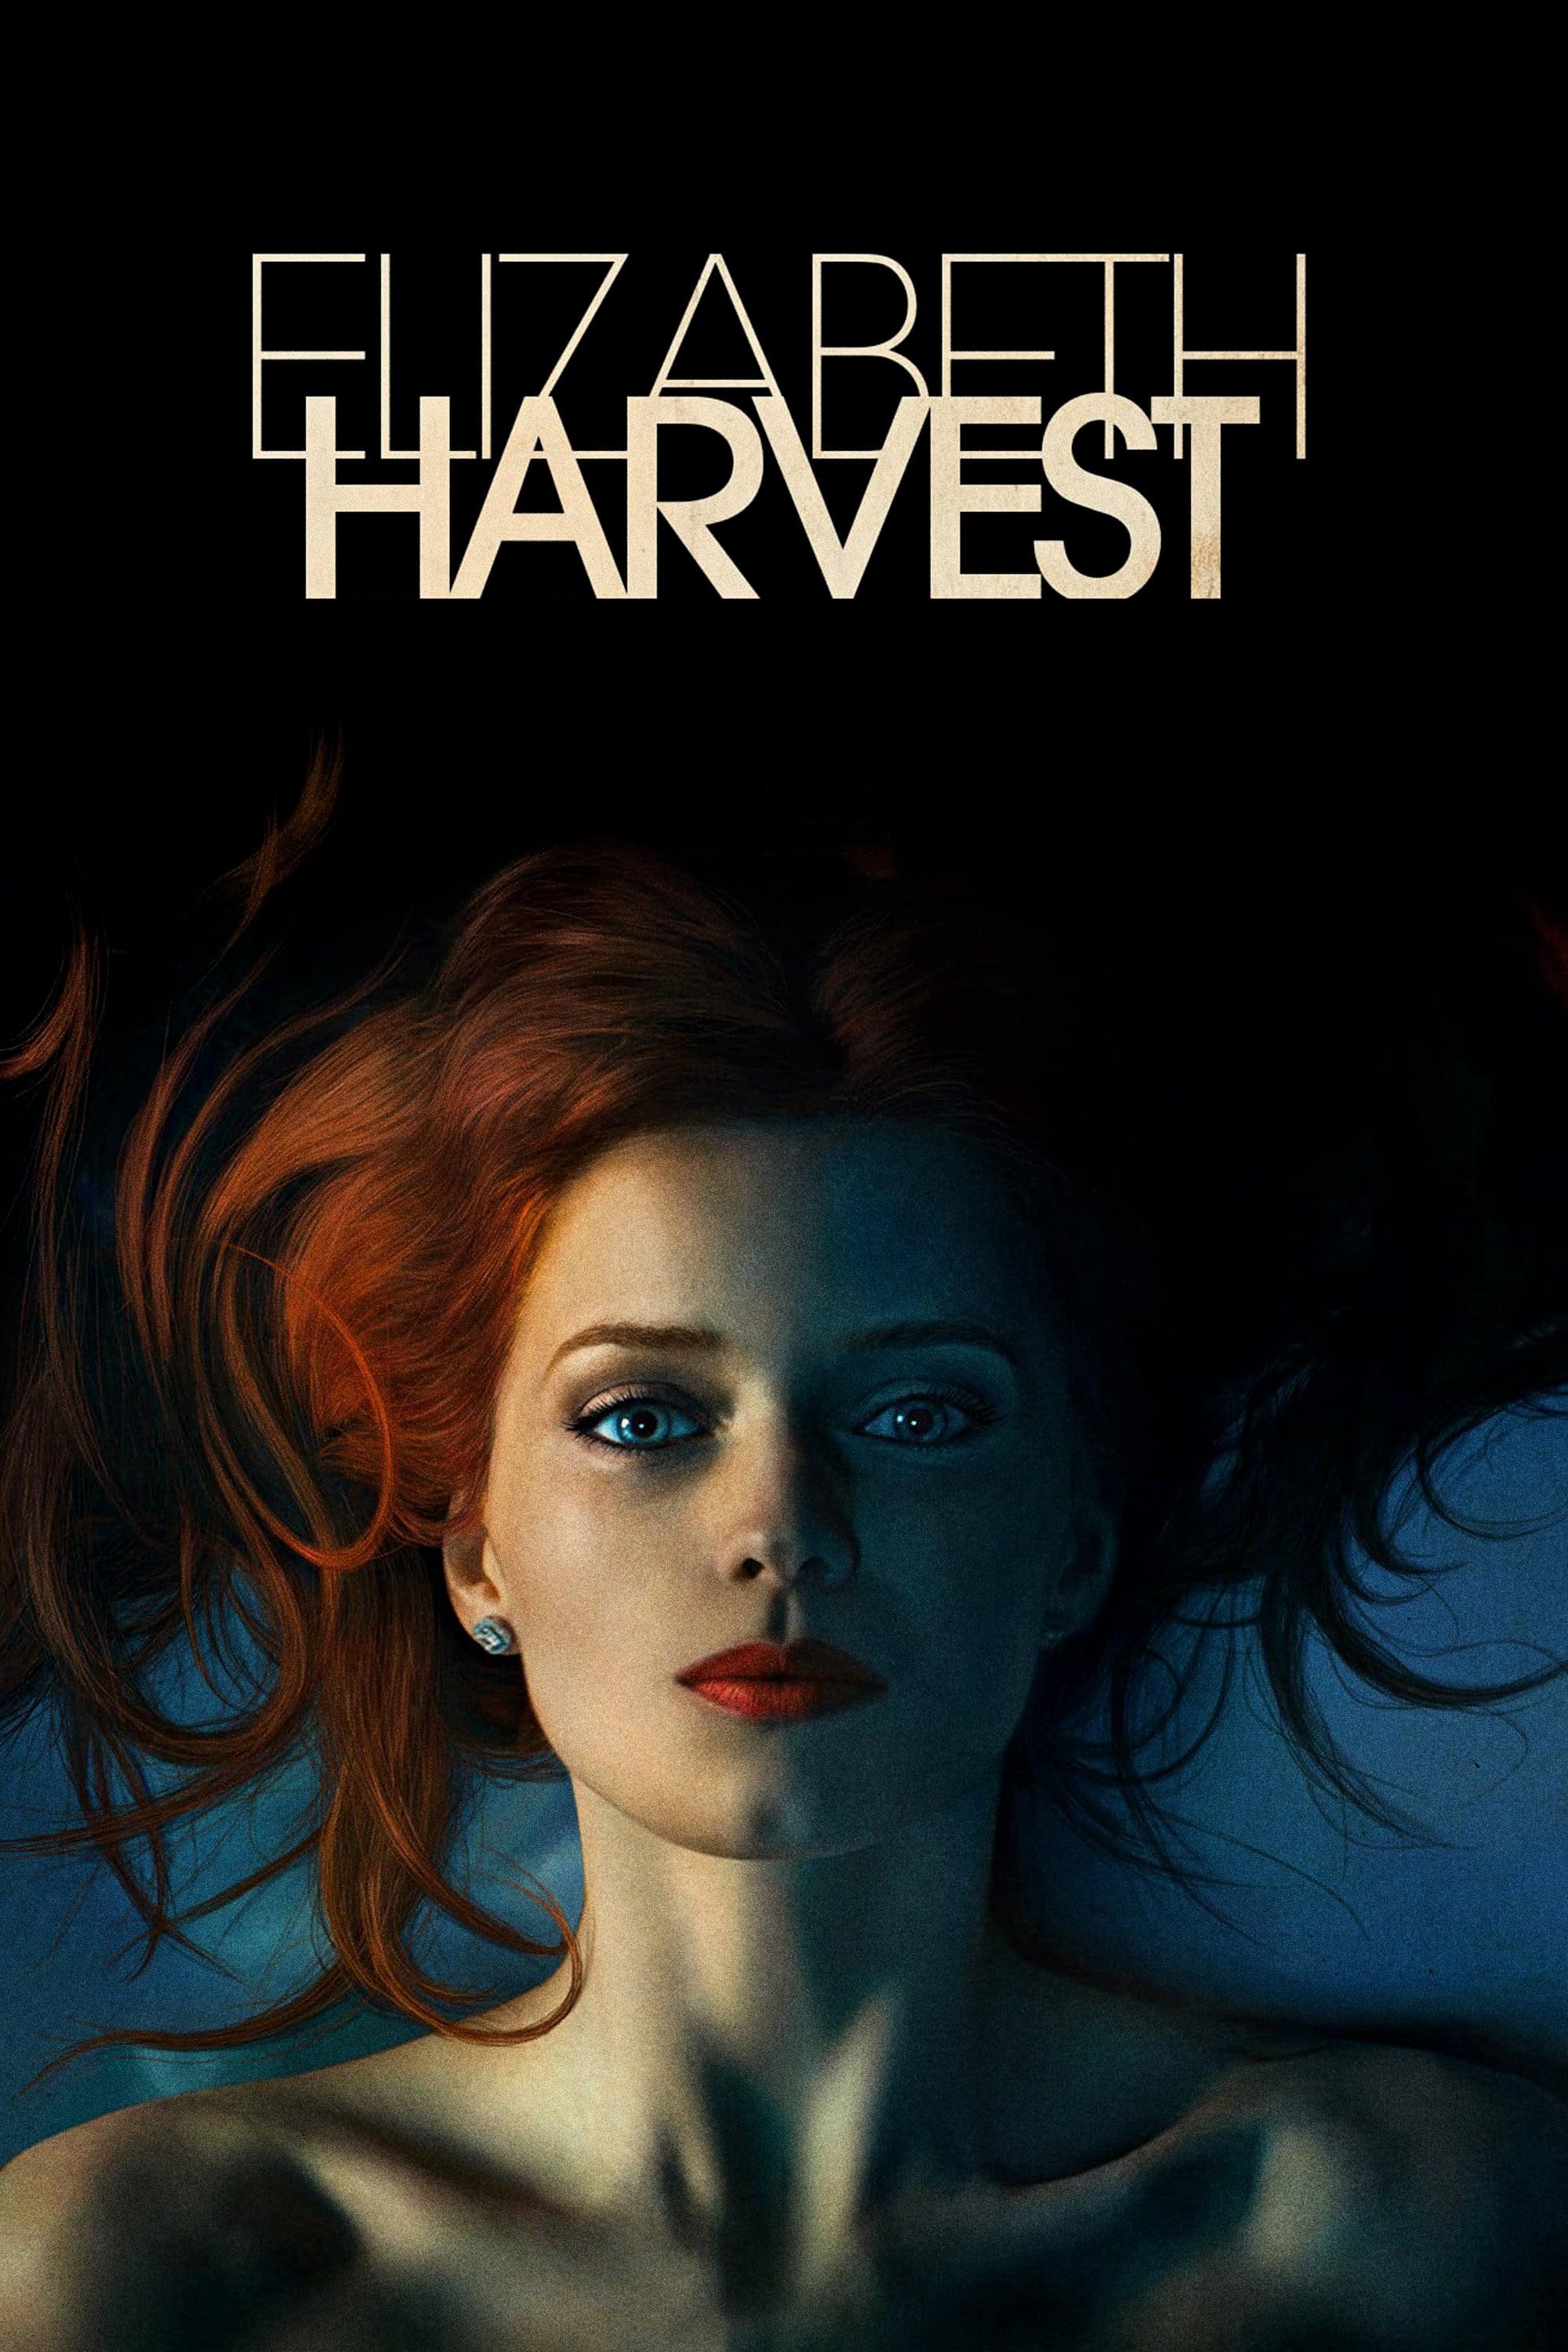 Elizabeth Harvest poster